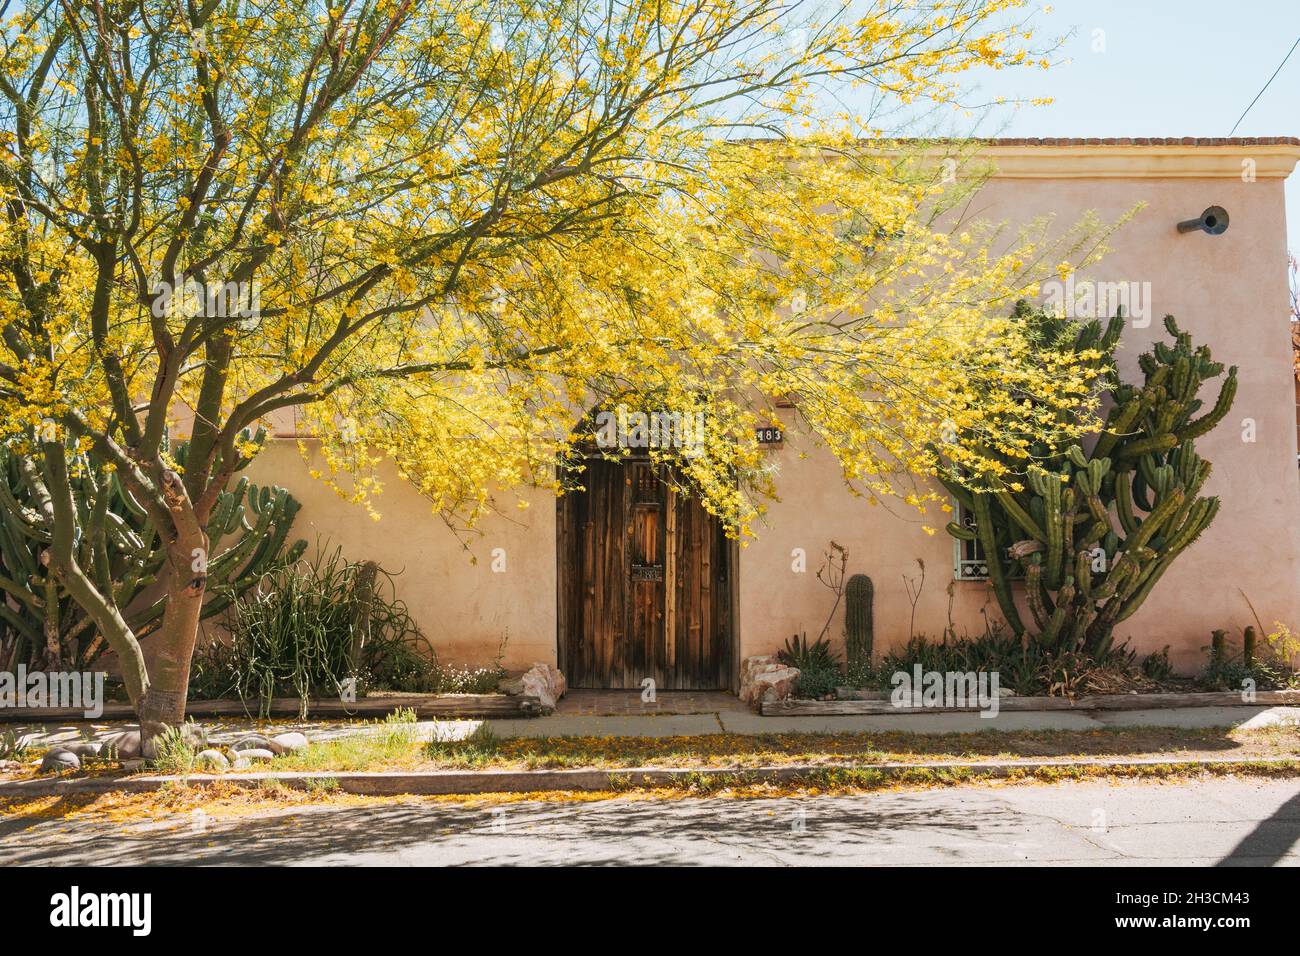 Un arbre aux tons de fleurs jaunes une maison en adobe avec une grande porte en bois à Barrio Viejo, Tucson, AZ Banque D'Images